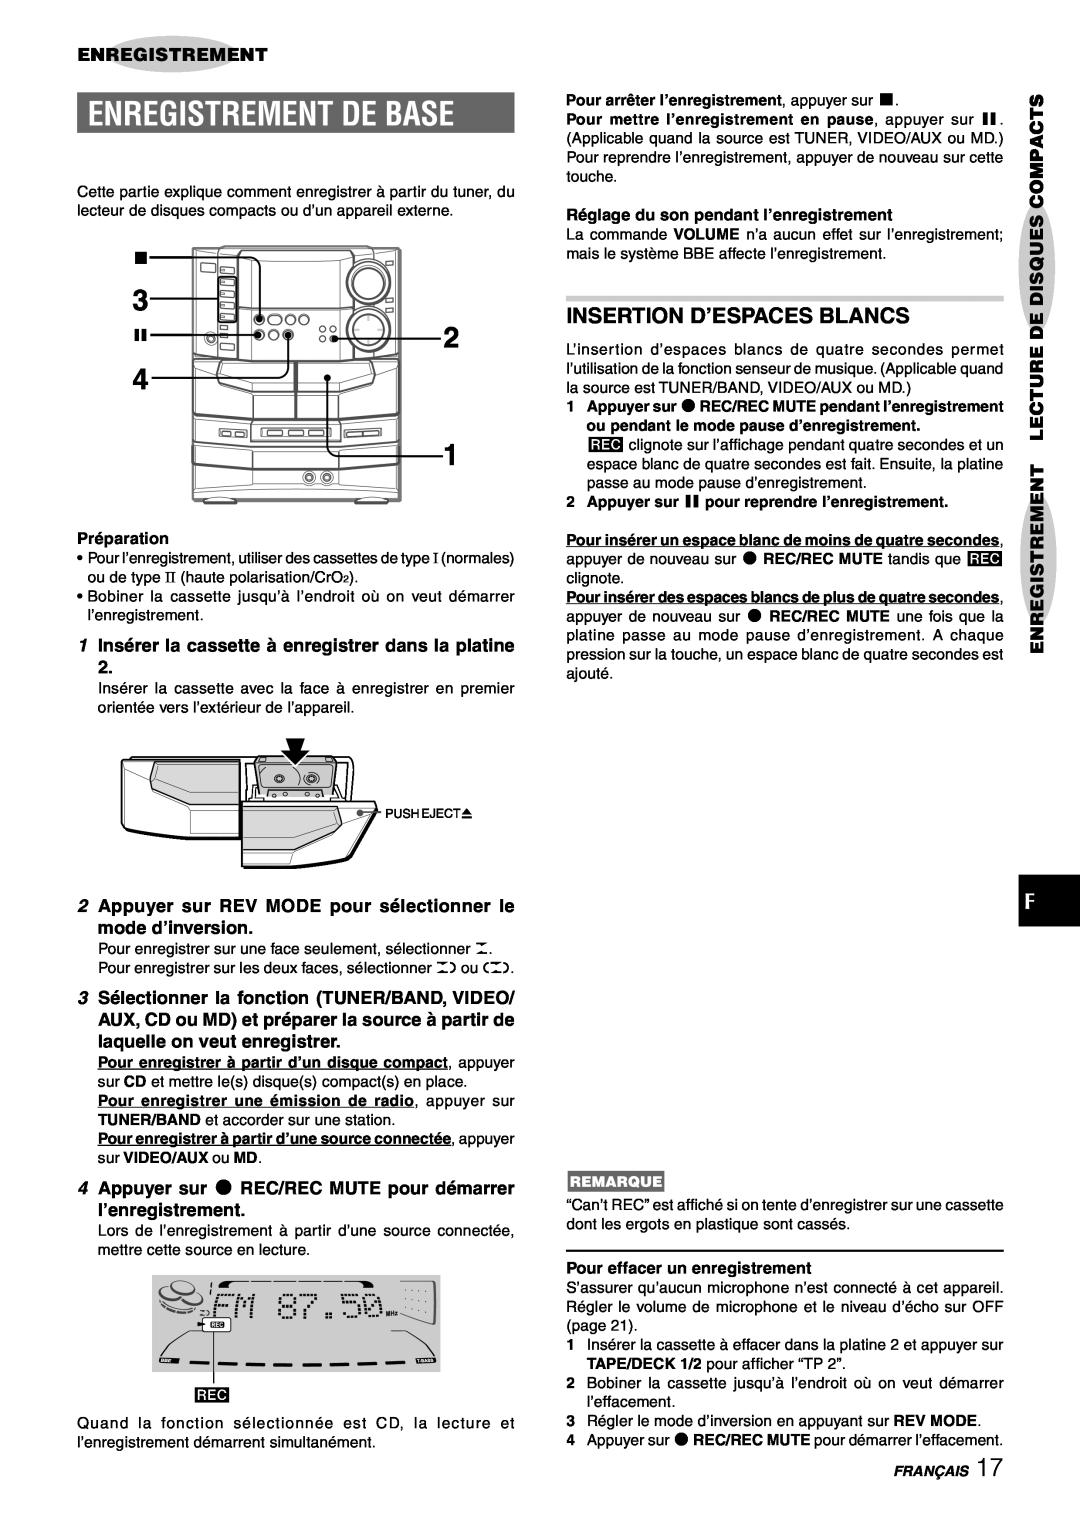 Sony NSX-AJ80 Enregistrement De Base, Insertion D’Espaces Blancs, 2Appuyer sur REV MODE pour sélectionner le, Compacts 